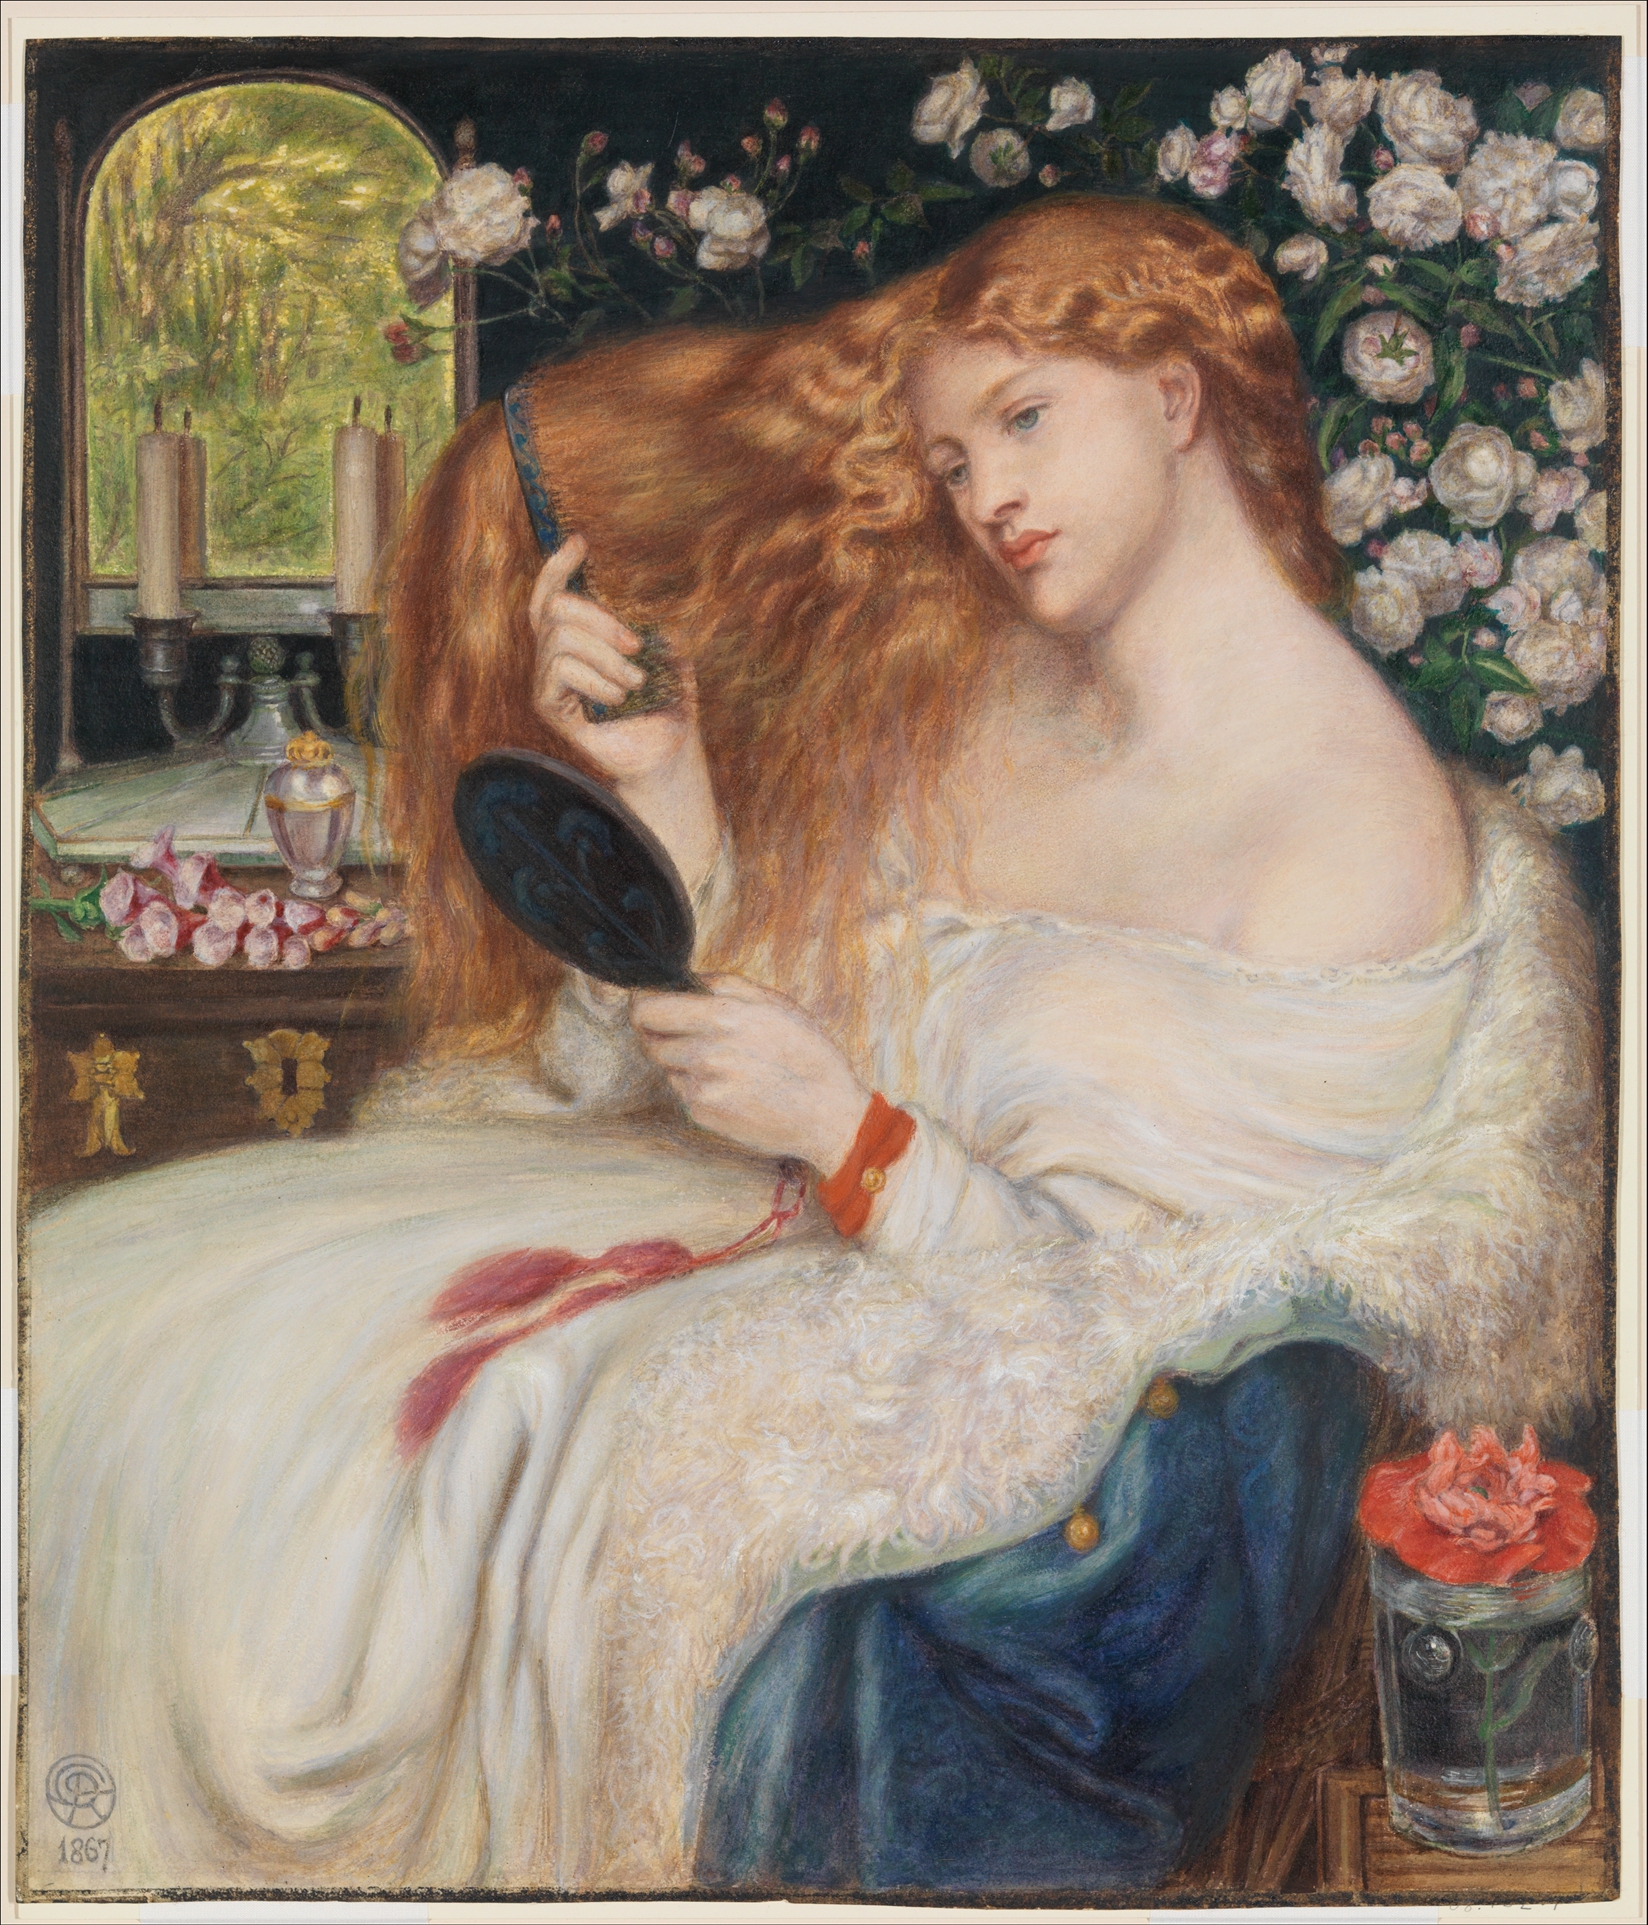 Lady Lilith by Dante Gabriel Rossetti - 1867 - 51,3 x 44 cm 